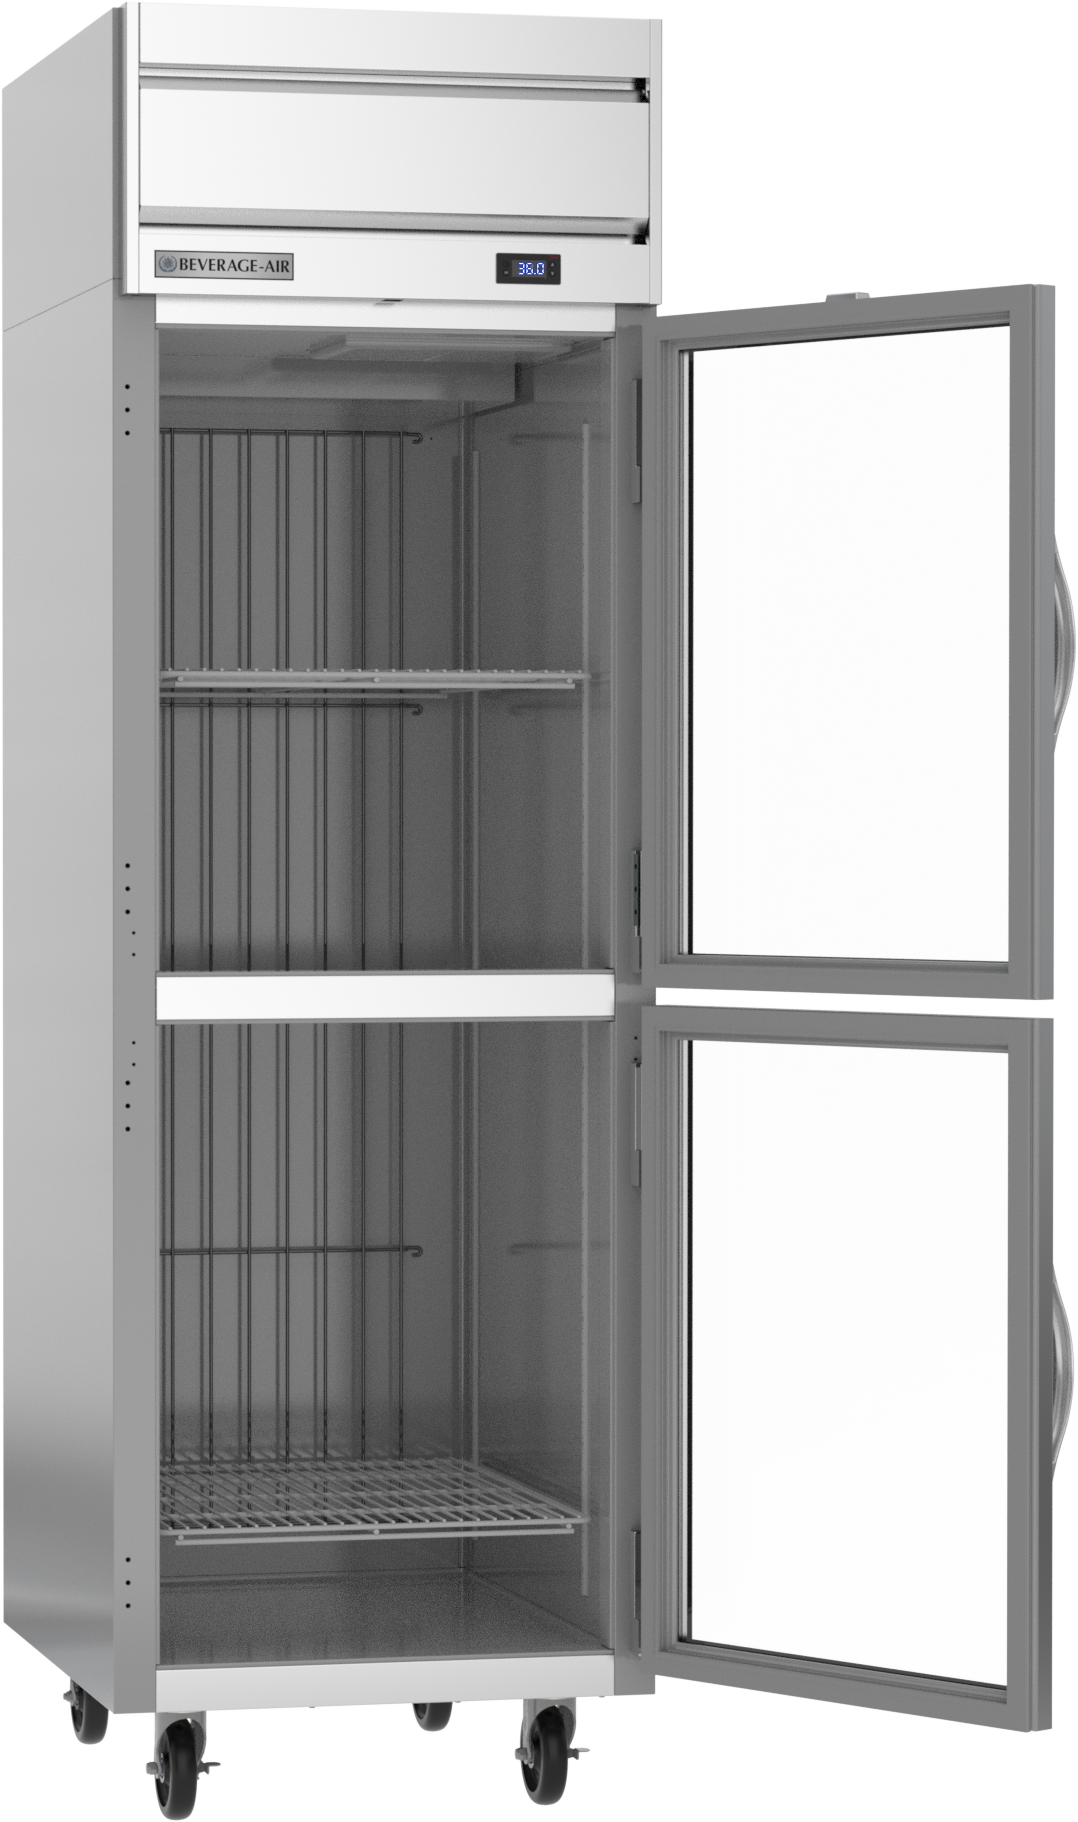 Beverage-Air HR1HC-1HG 26" One Section Glass Half Door Reach-In Refrigerator